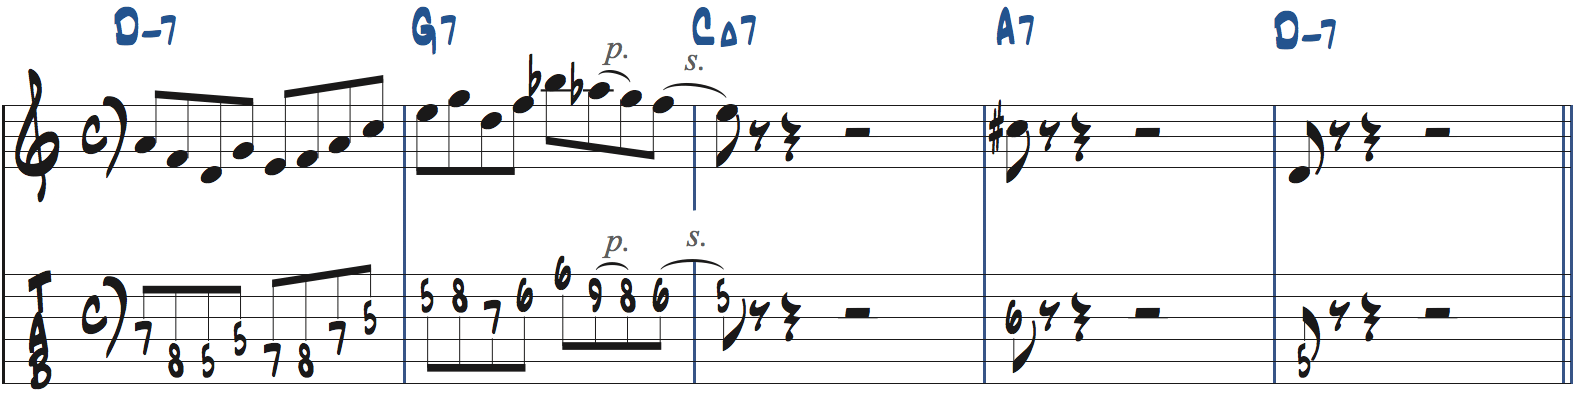 251リックを使った後のフレーズの作り方6楽譜